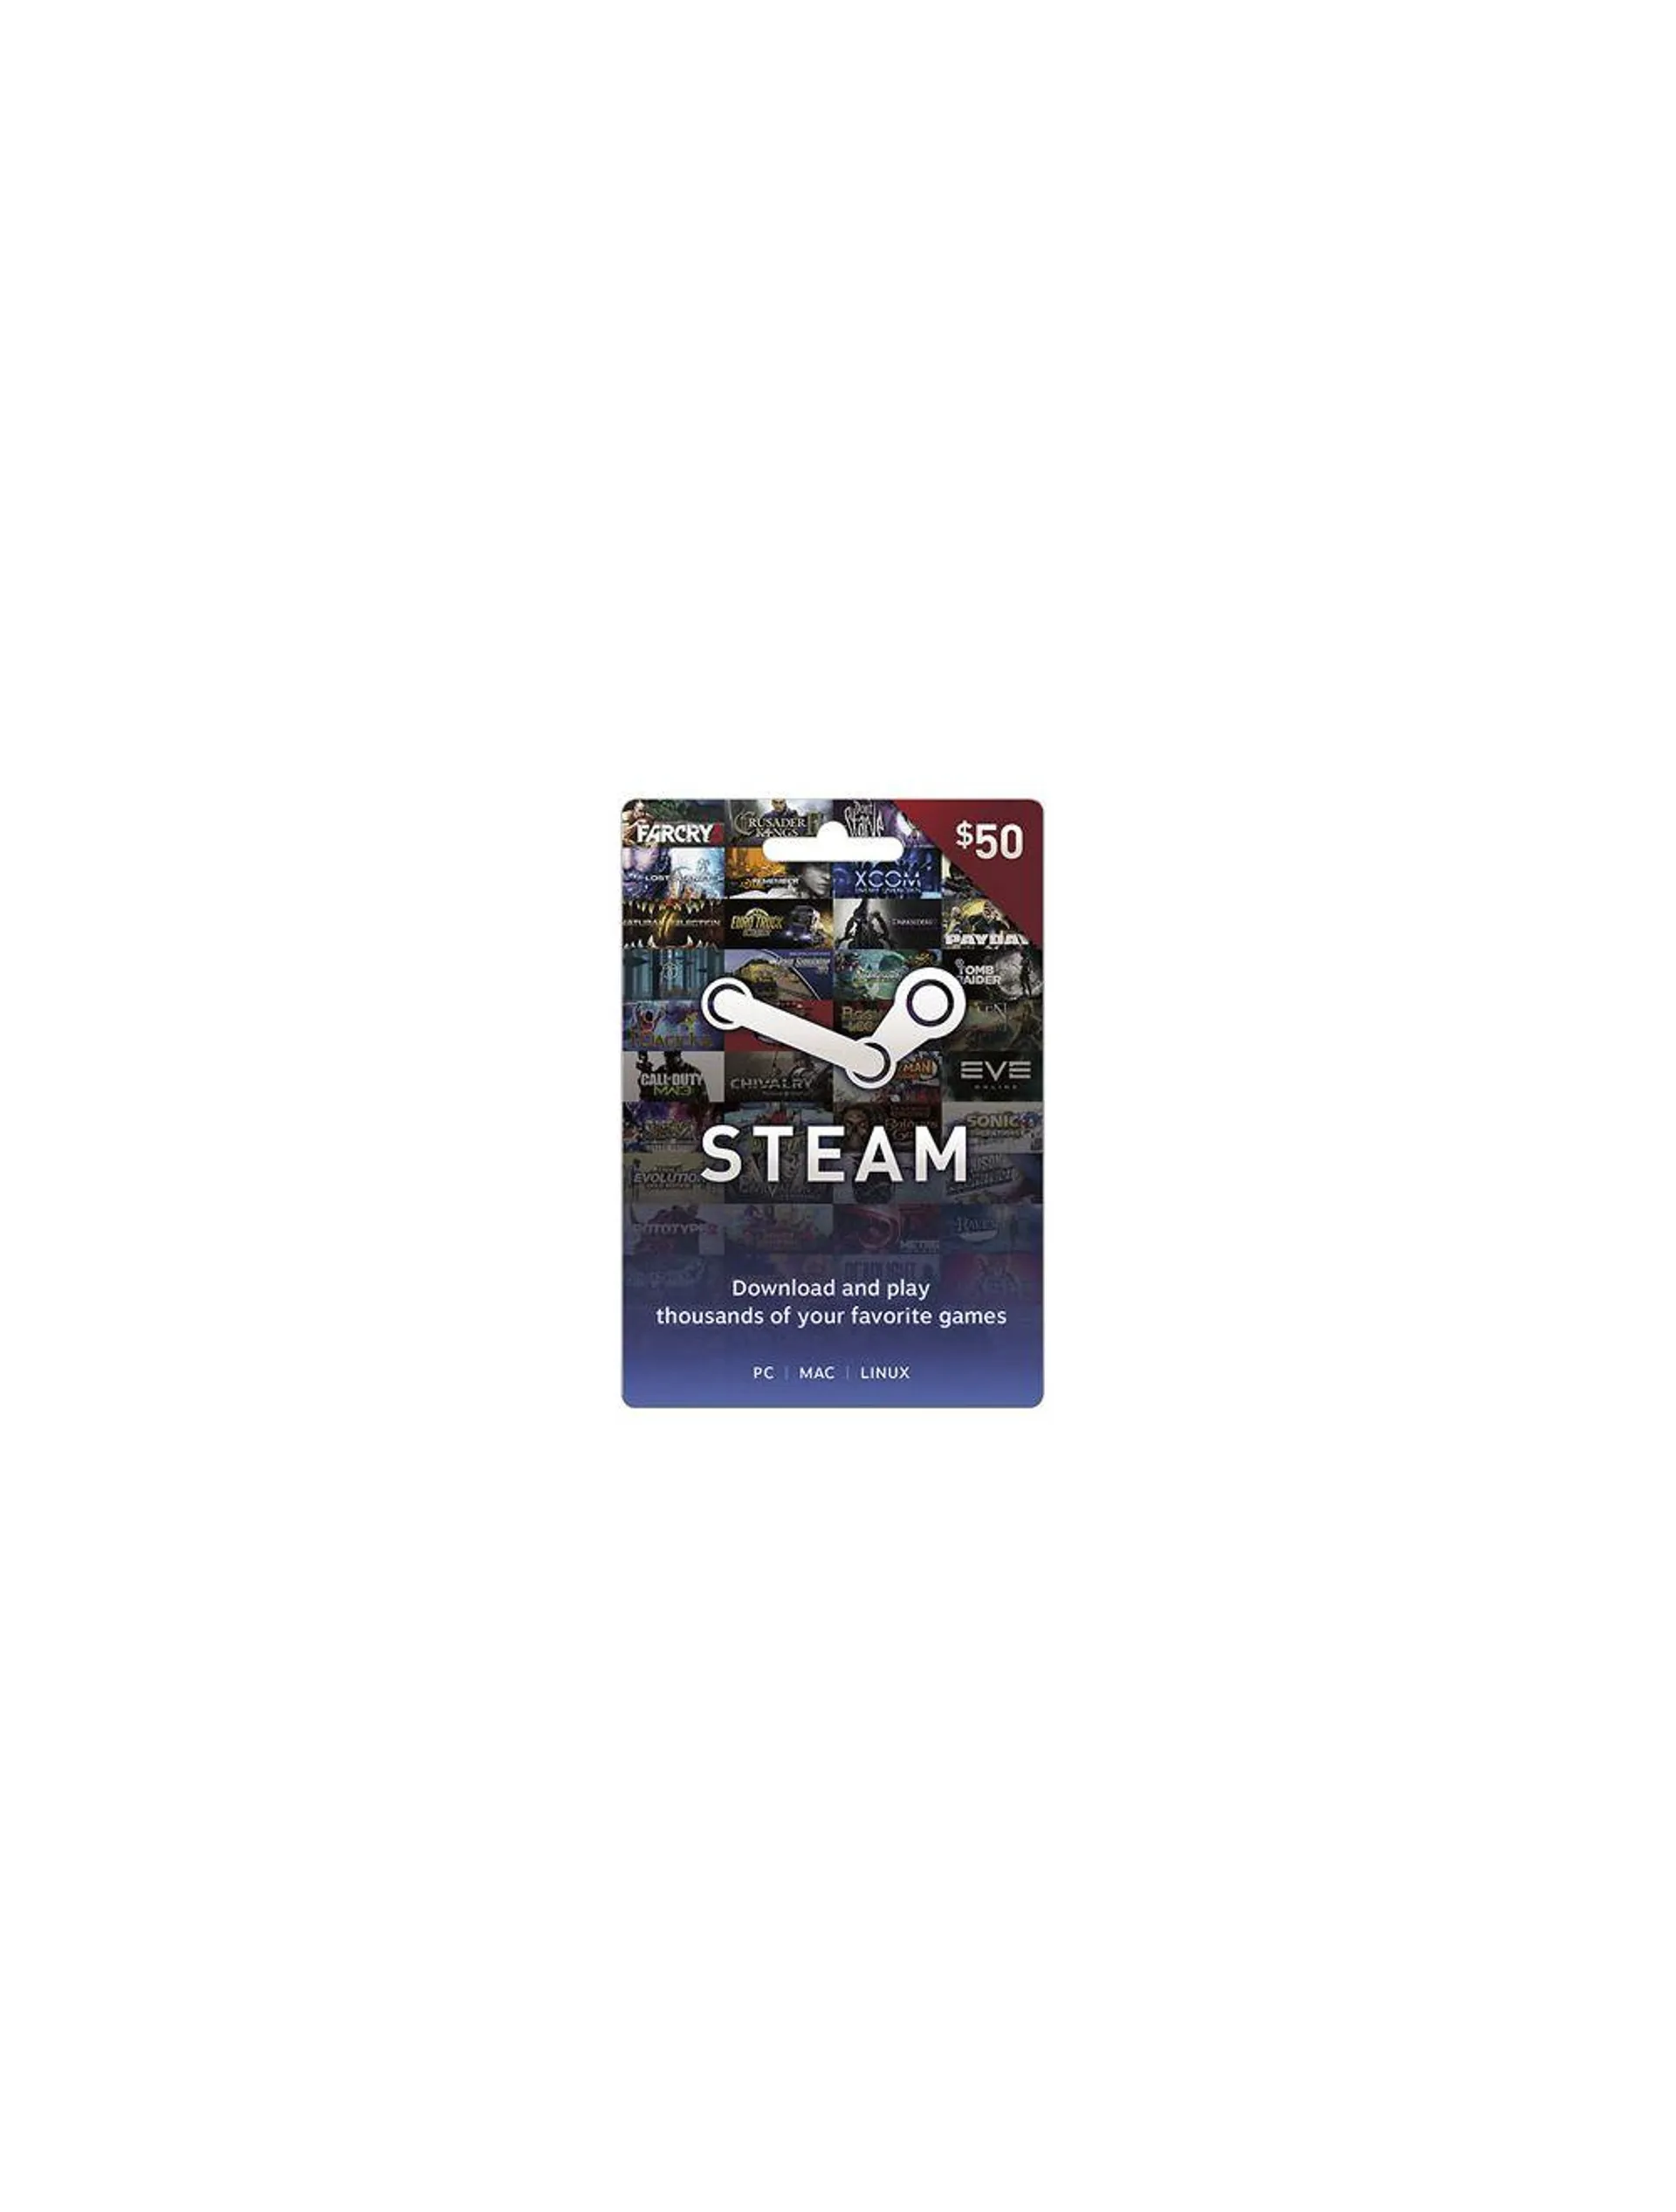 Tarjeta Steam Wallet Code US$50